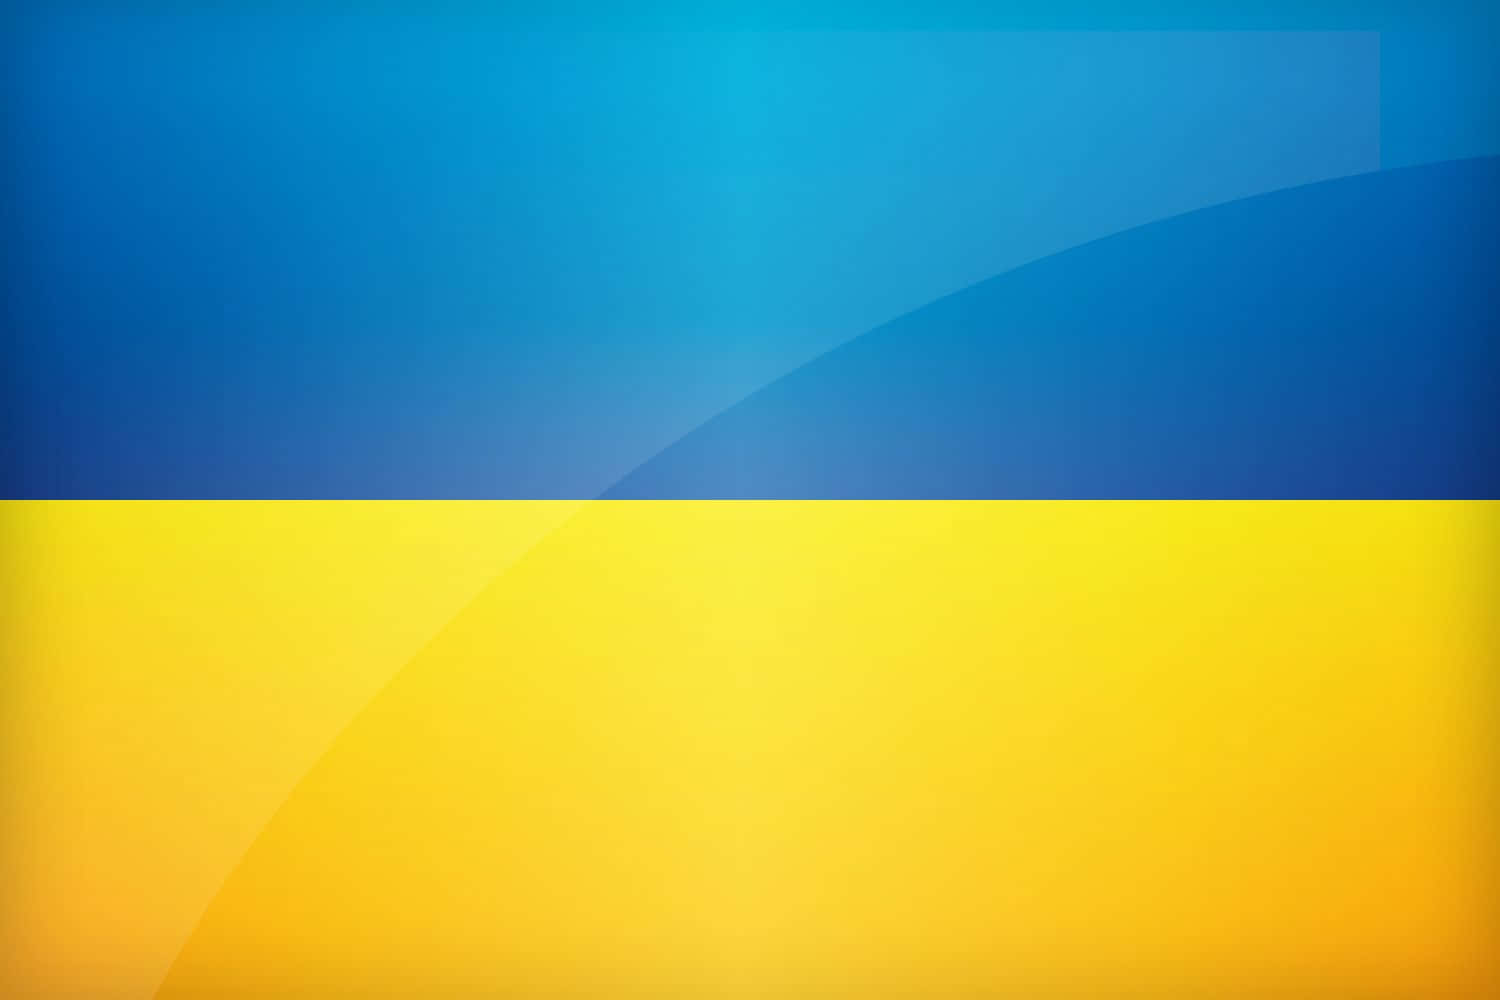 Welcome to Ukraine: An Emerging European Destination